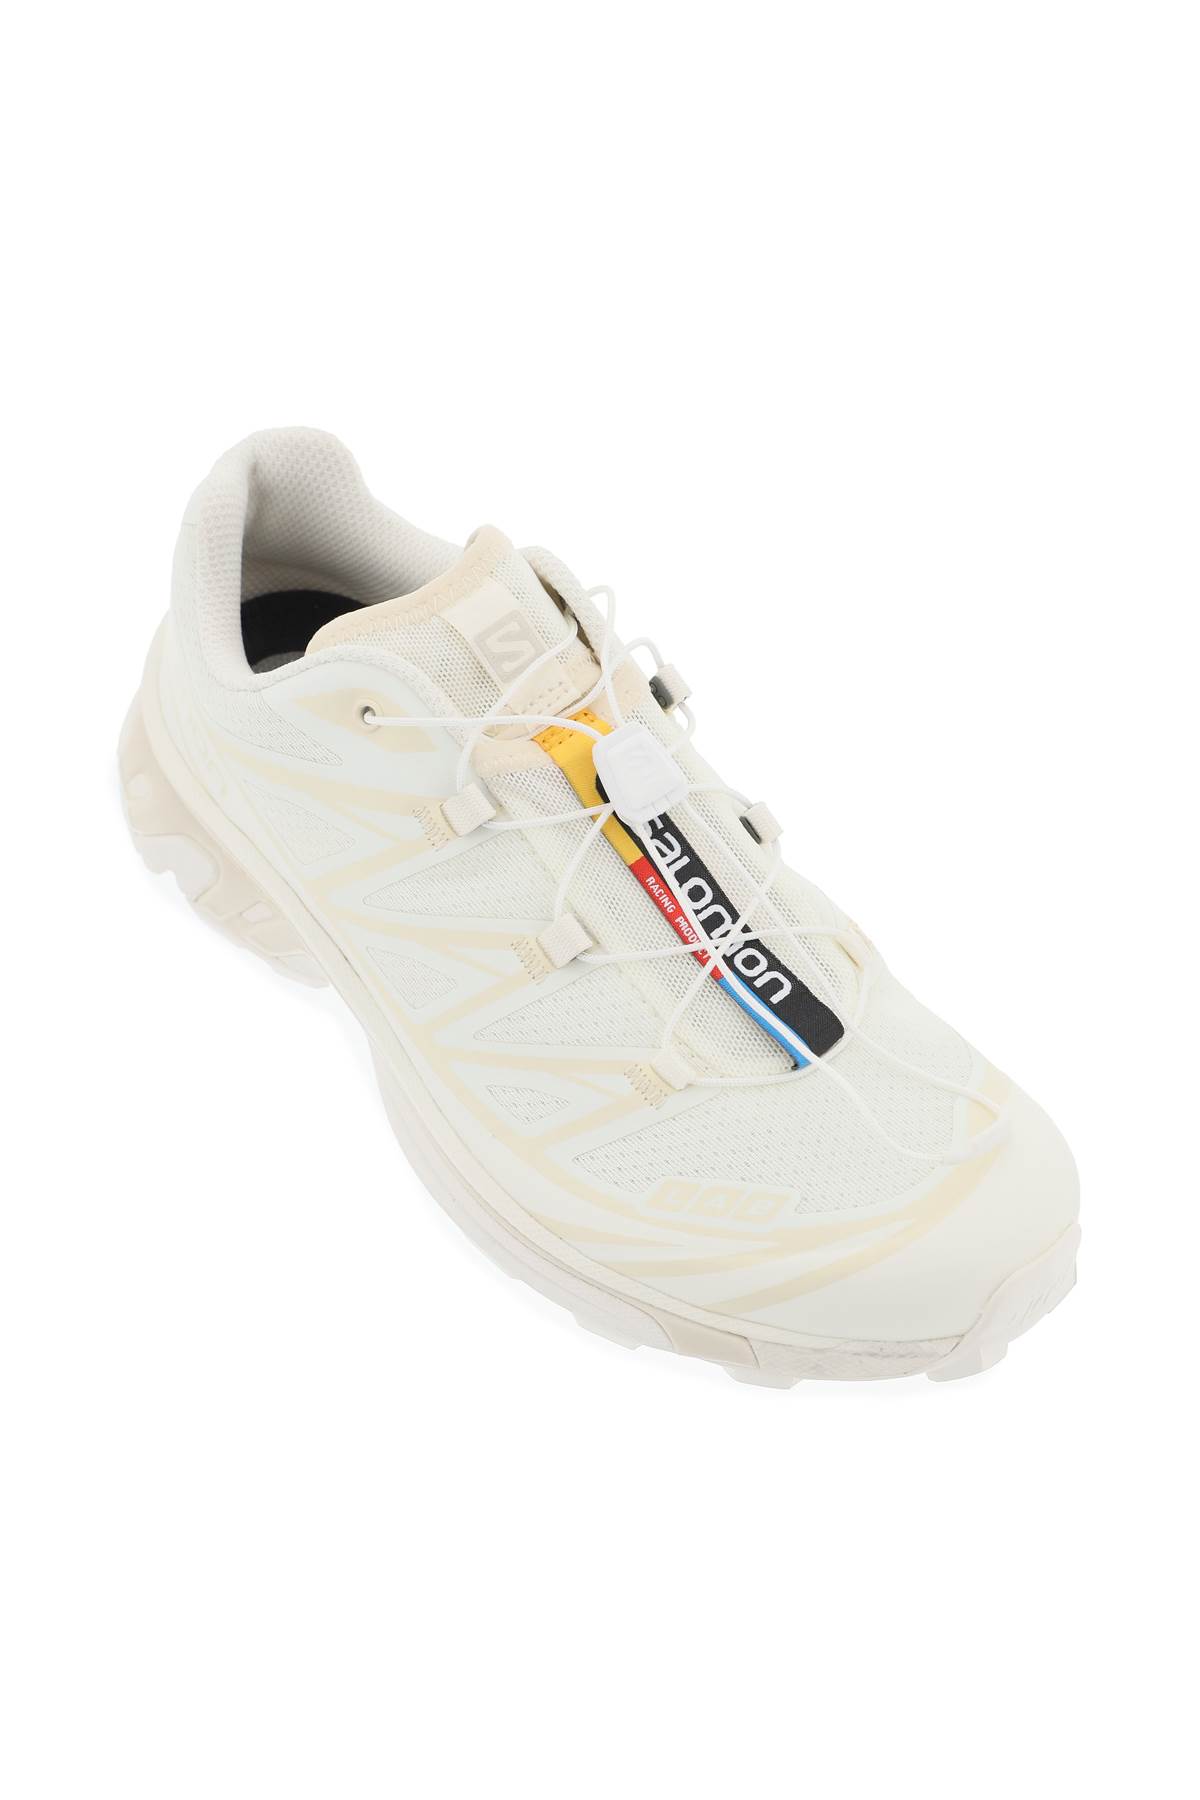 Shop Salomon Xt-6 Sneakers In Vanilla Ice Vanilla Ice Almond Milk (white)